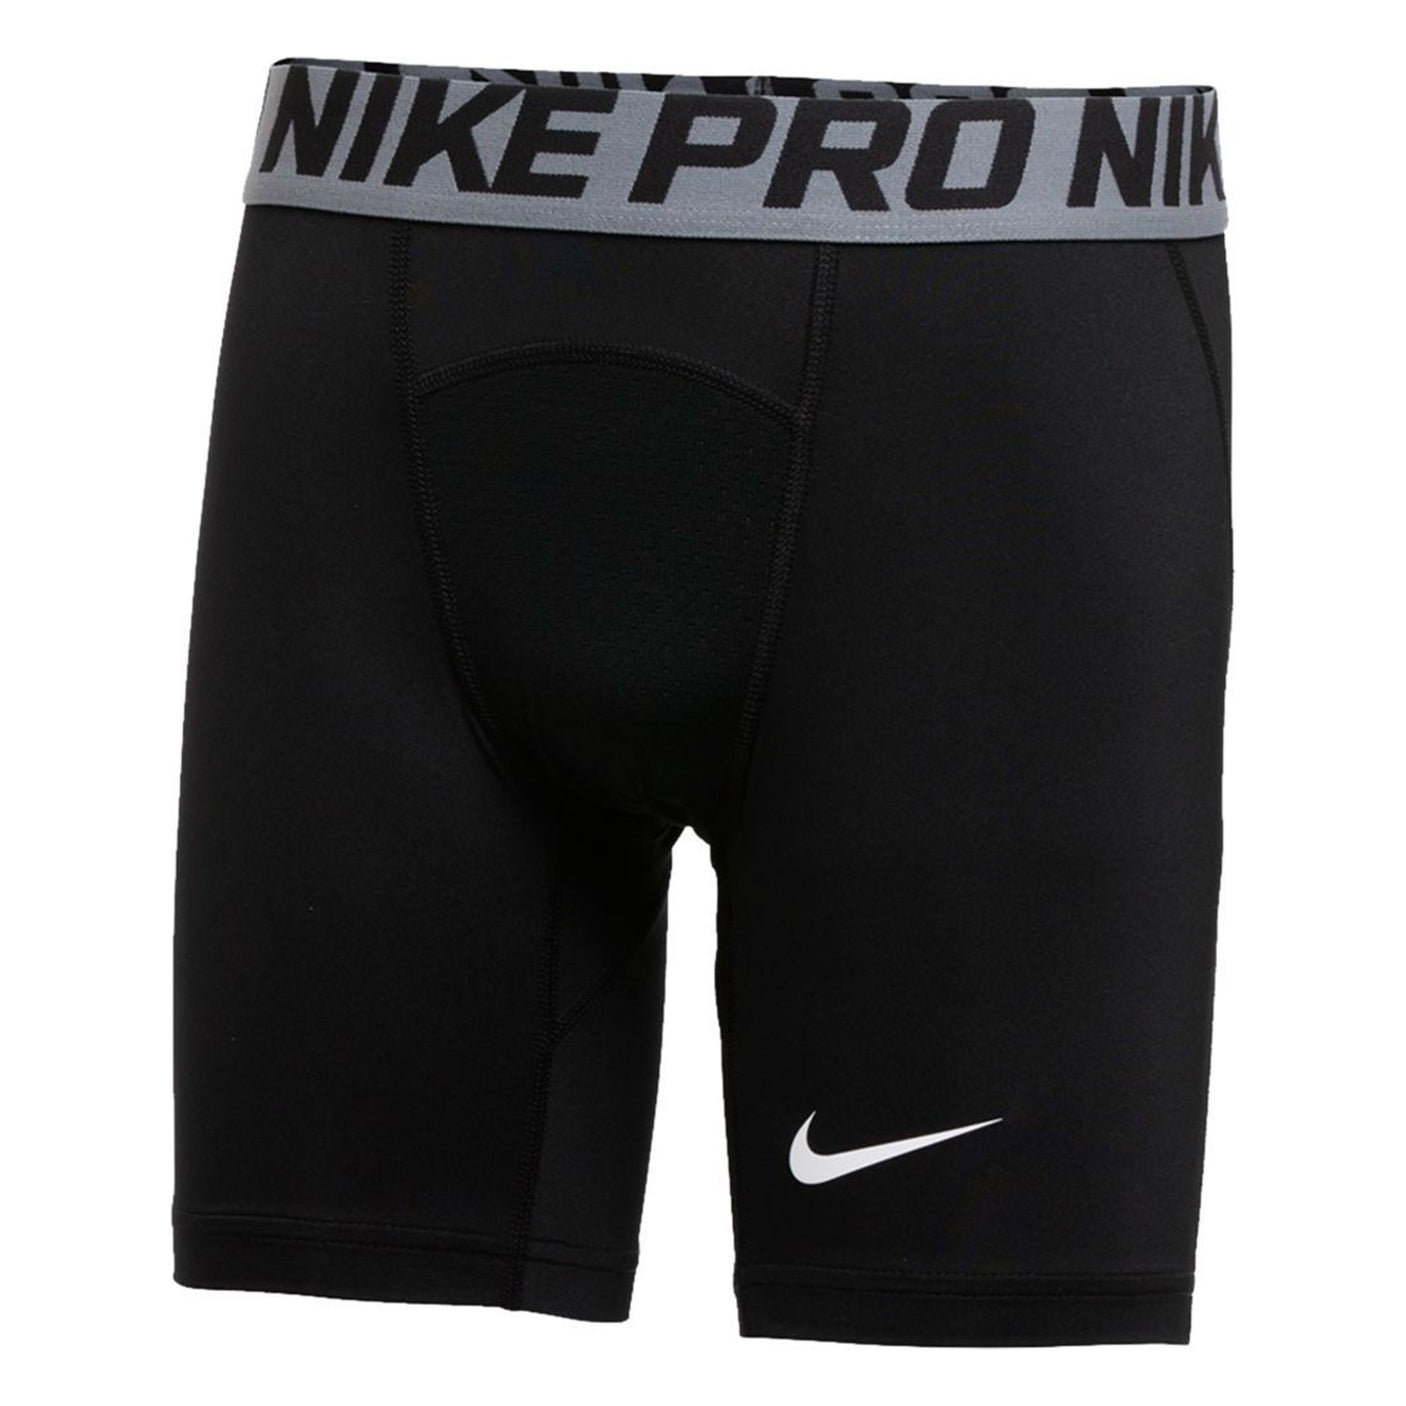 Nike Kids Pro Tight Shorts Black/White